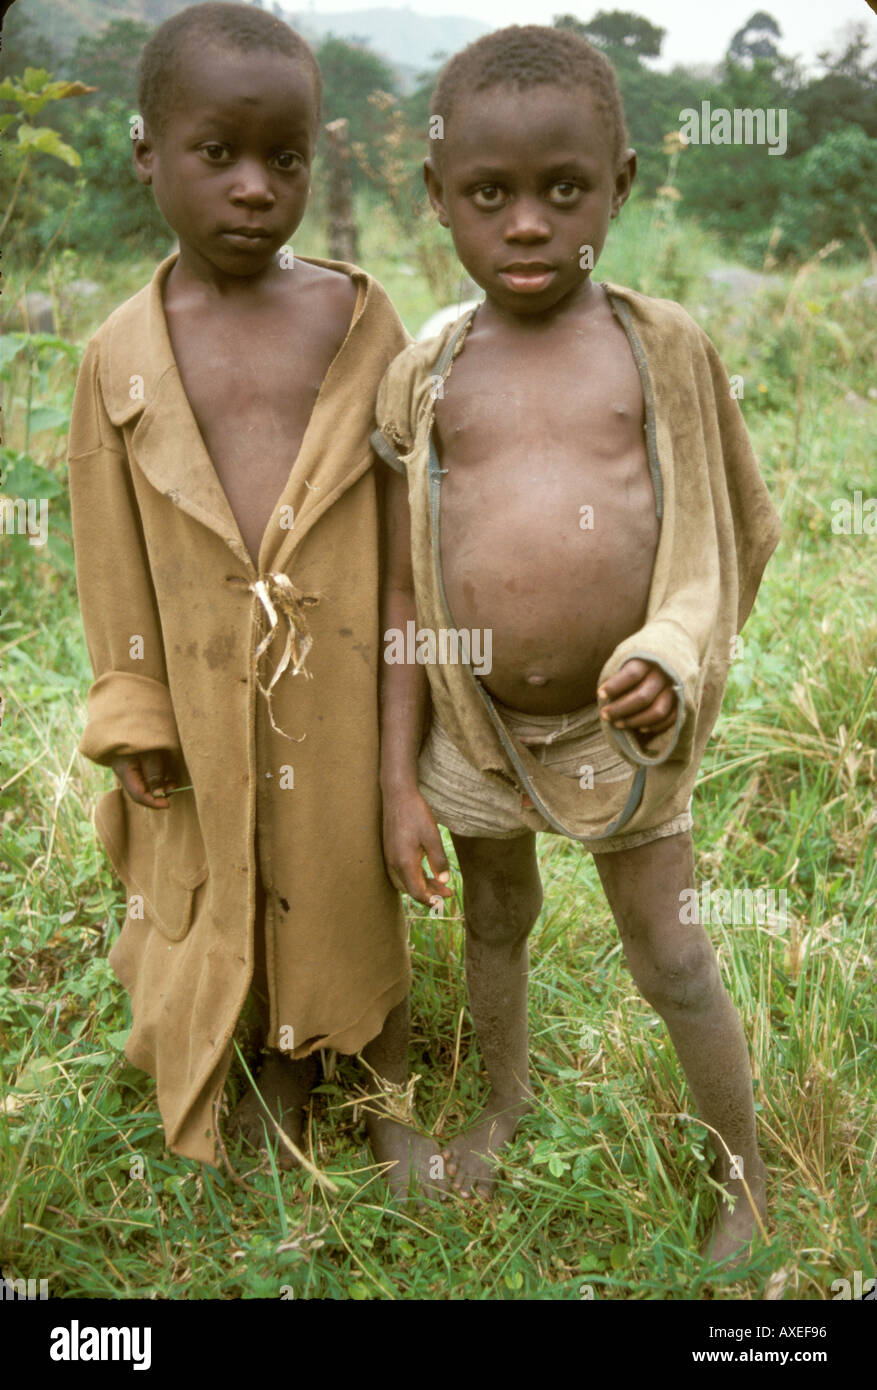 Poor Kids In Africa